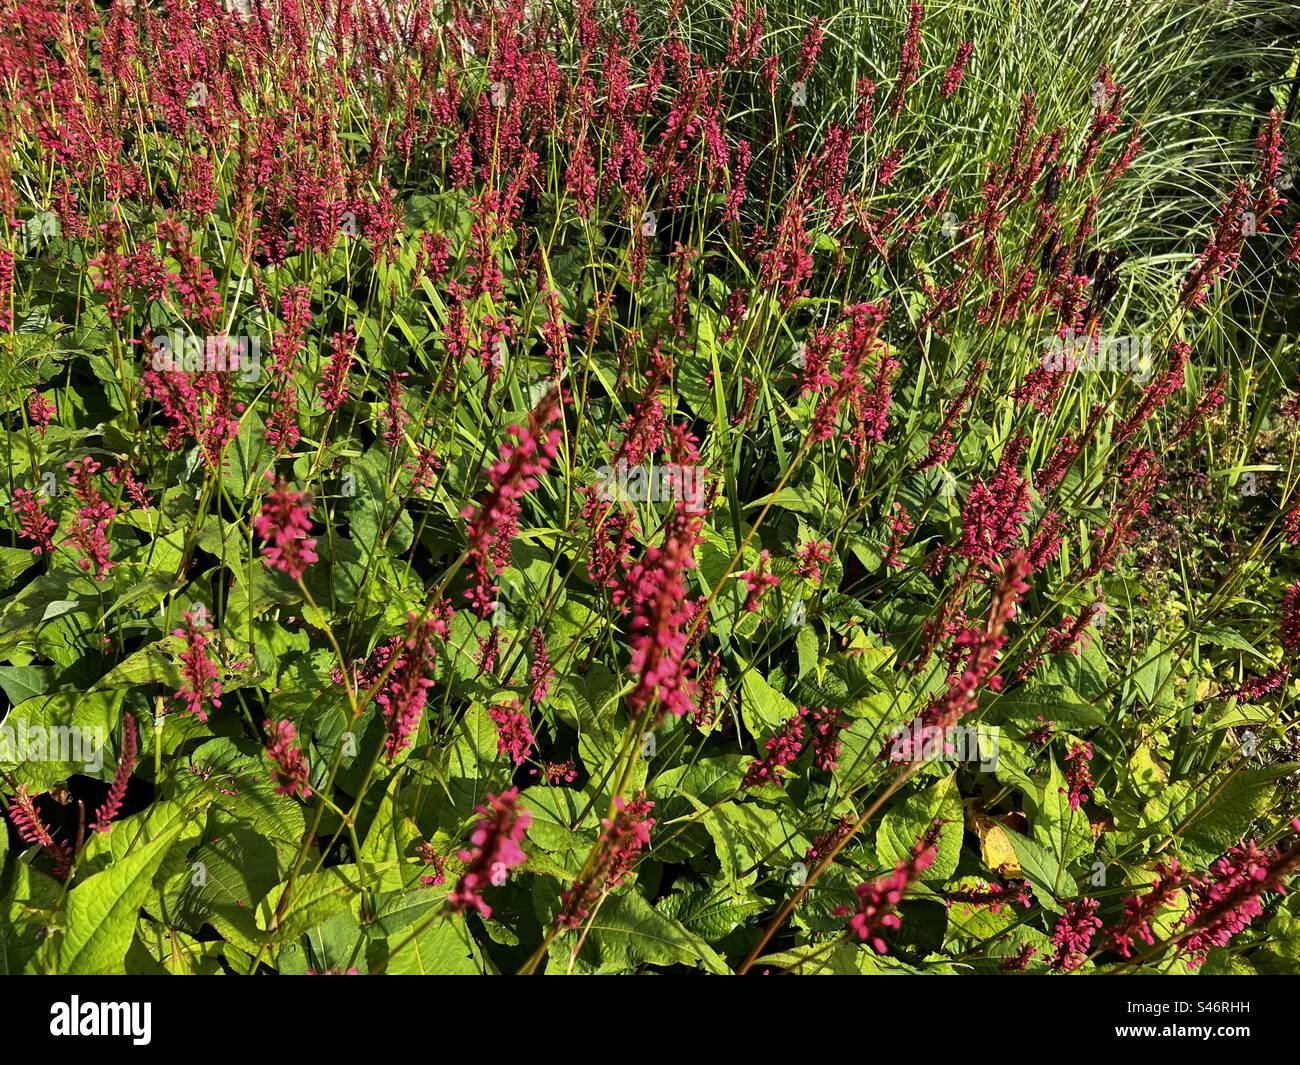 Persicaria plant in a sensory garden Stock Photo